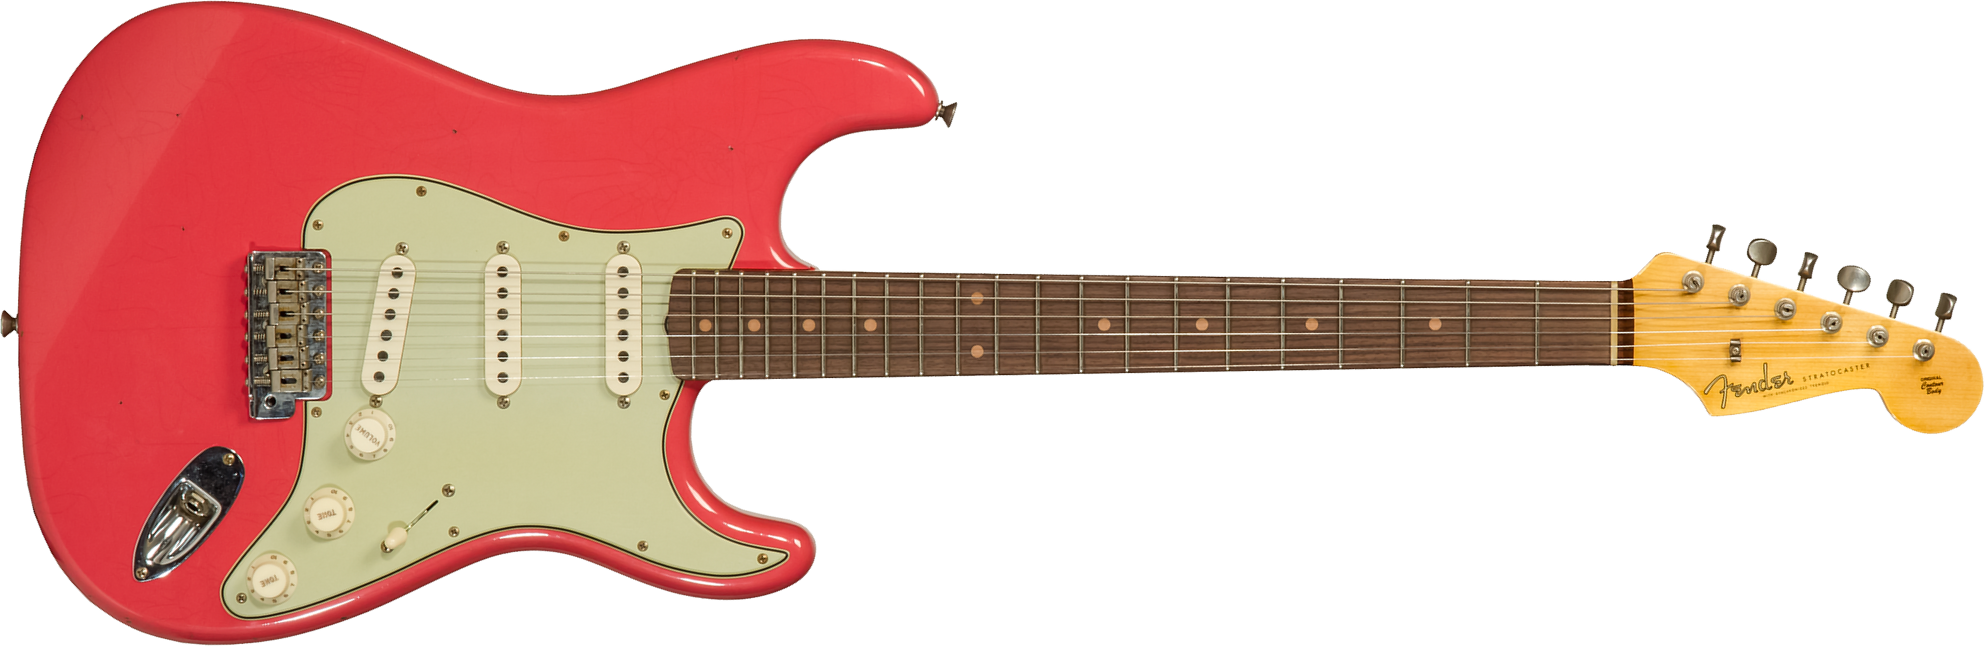 Fender Custom Shop Strat 1959 3s Trem Rw #cz569772 - Journeyman Relic Aged Fiesta Red - Elektrische gitaar in Str-vorm - Main picture